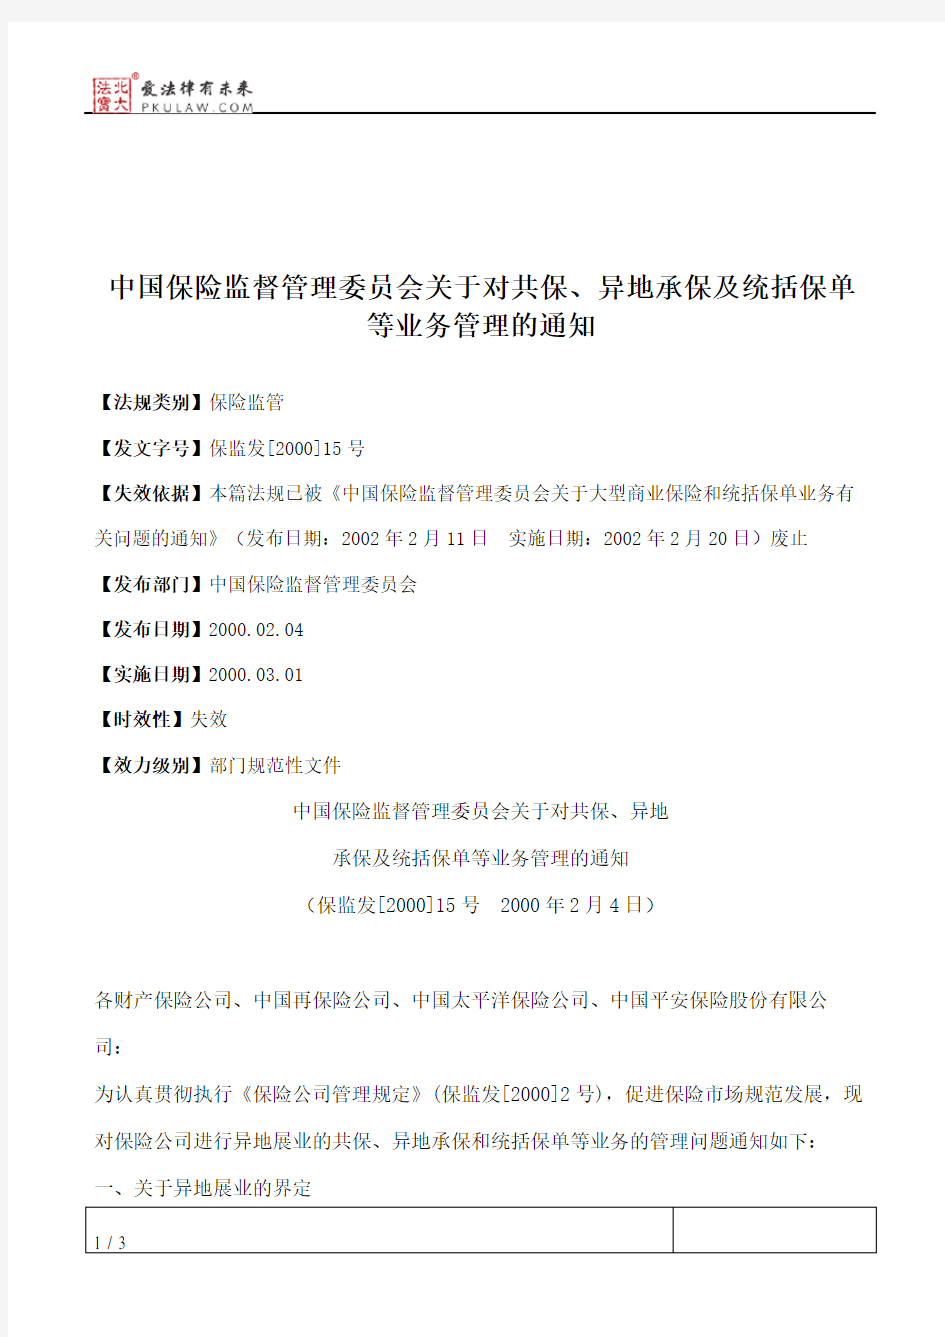 中国保险监督管理委员会关于对共保、异地承保及统括保单等业务管